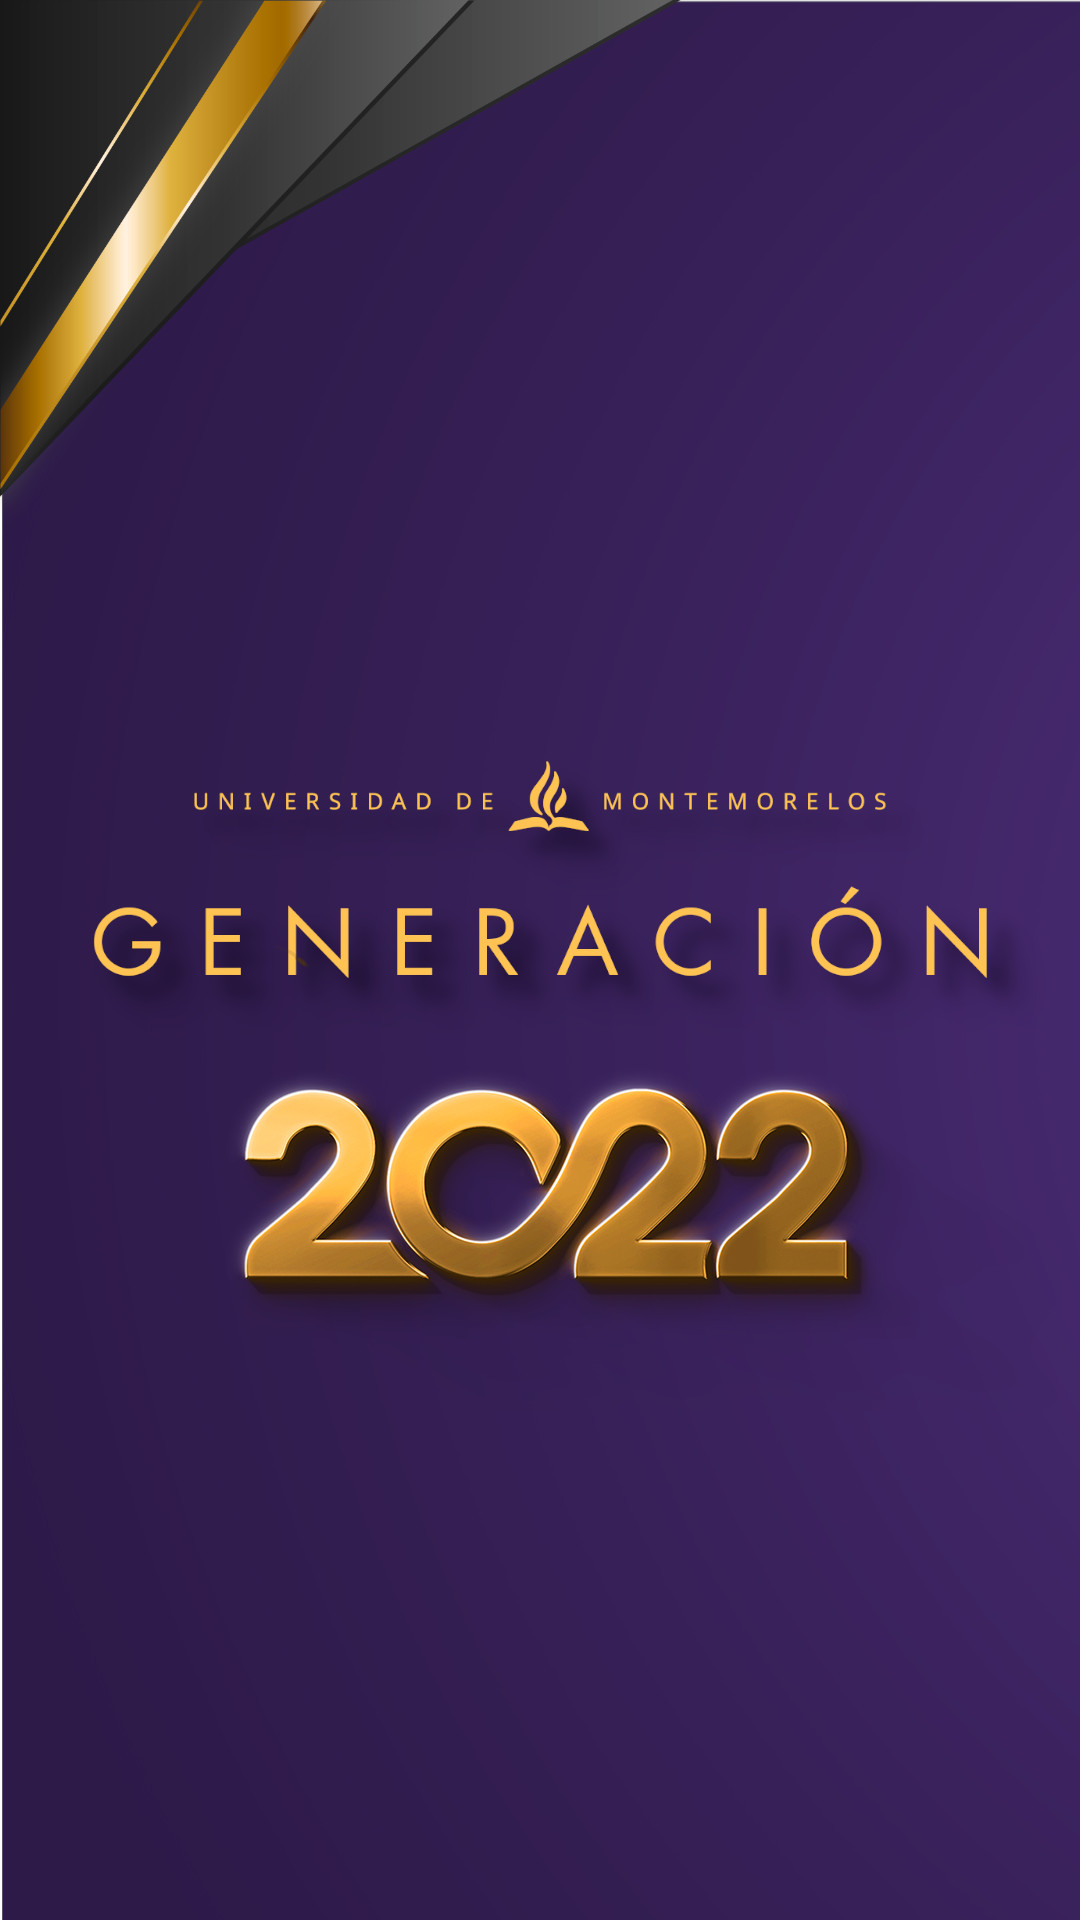 Graduación 2022 | Universidad de Montemorelos